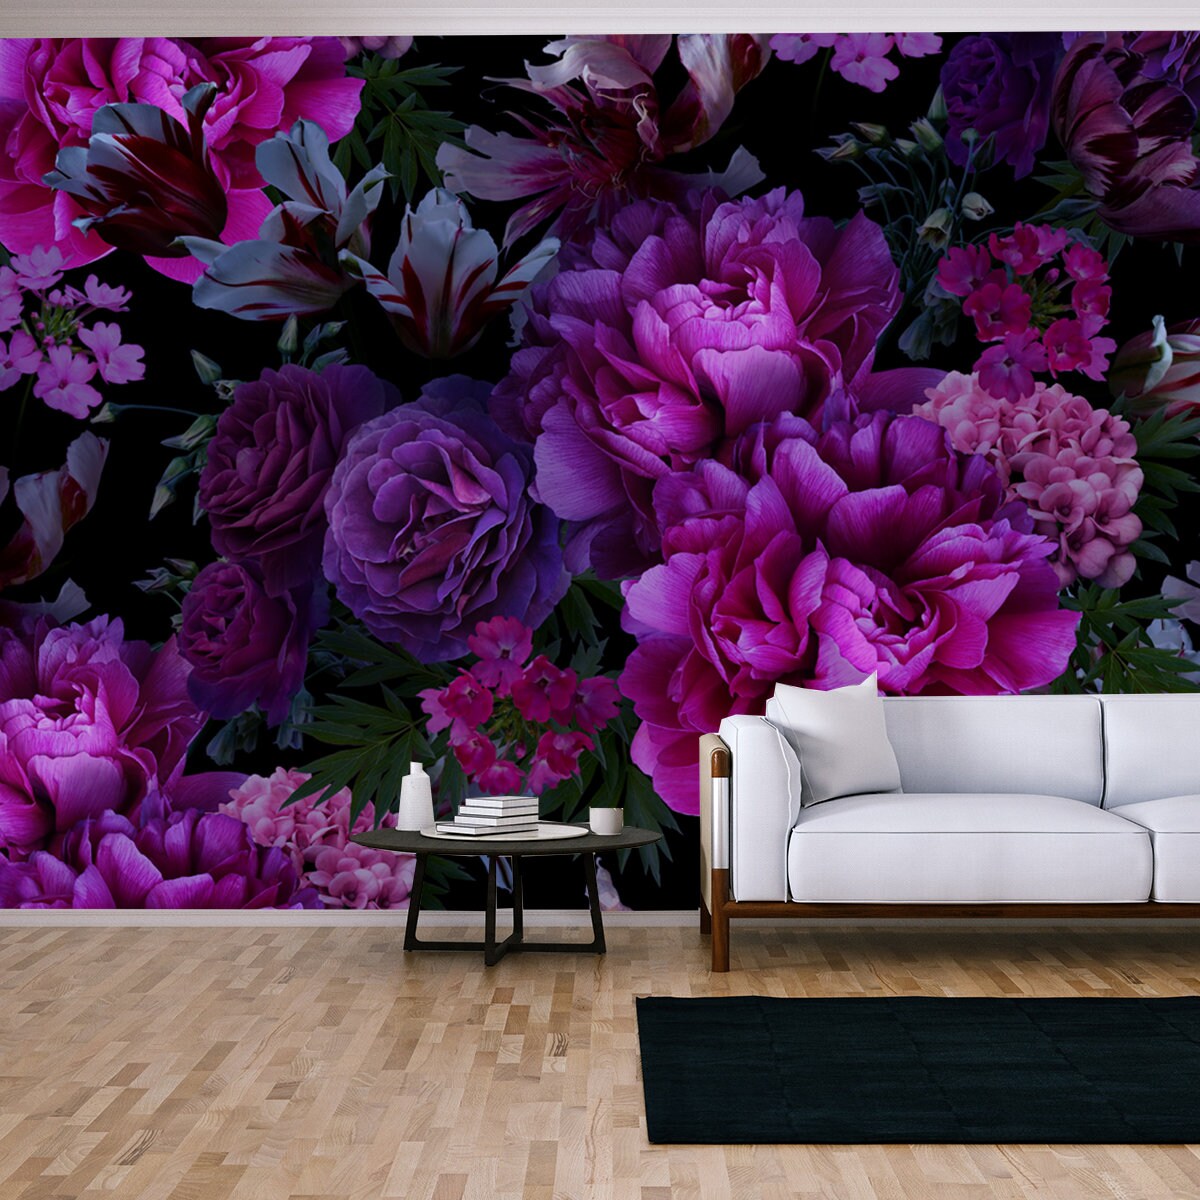 Floral Vintage Seamless Pattern. Blooming Peonies, Roses, Tulips, Garden Flowers, Decorative Herbs, Leaves on Black Living Room Mural